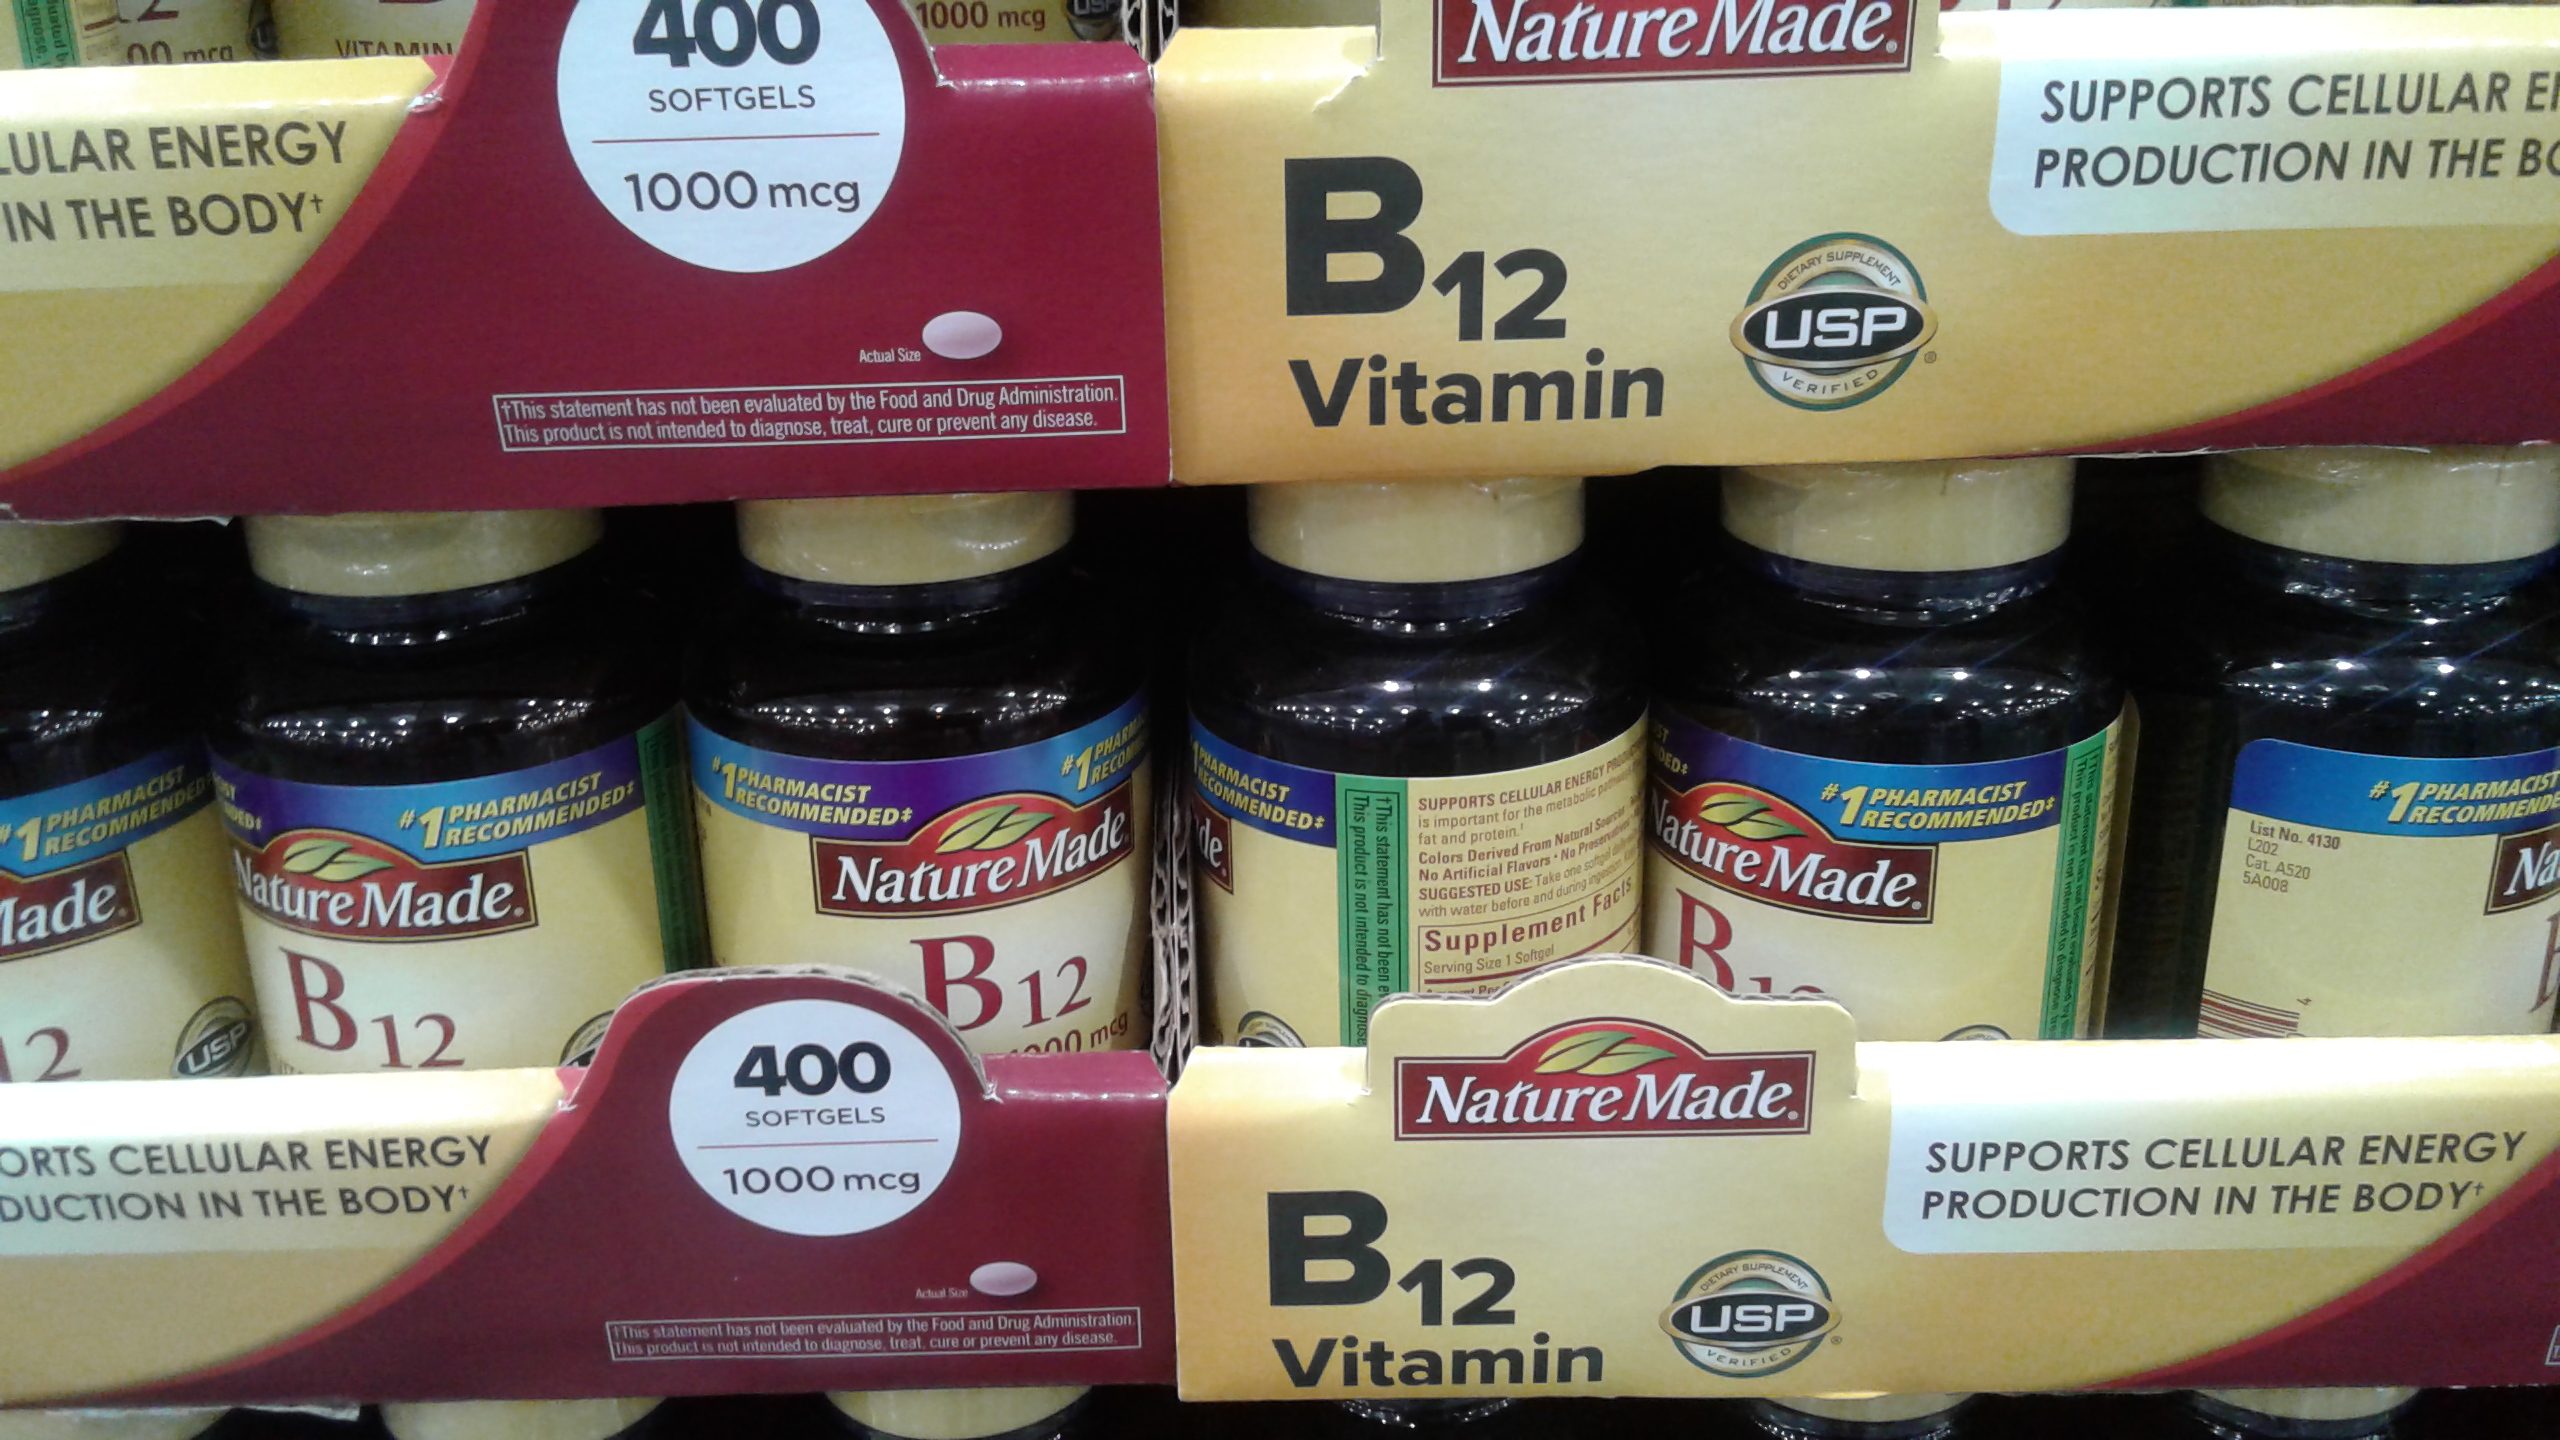 Nature Made Vitamin B12